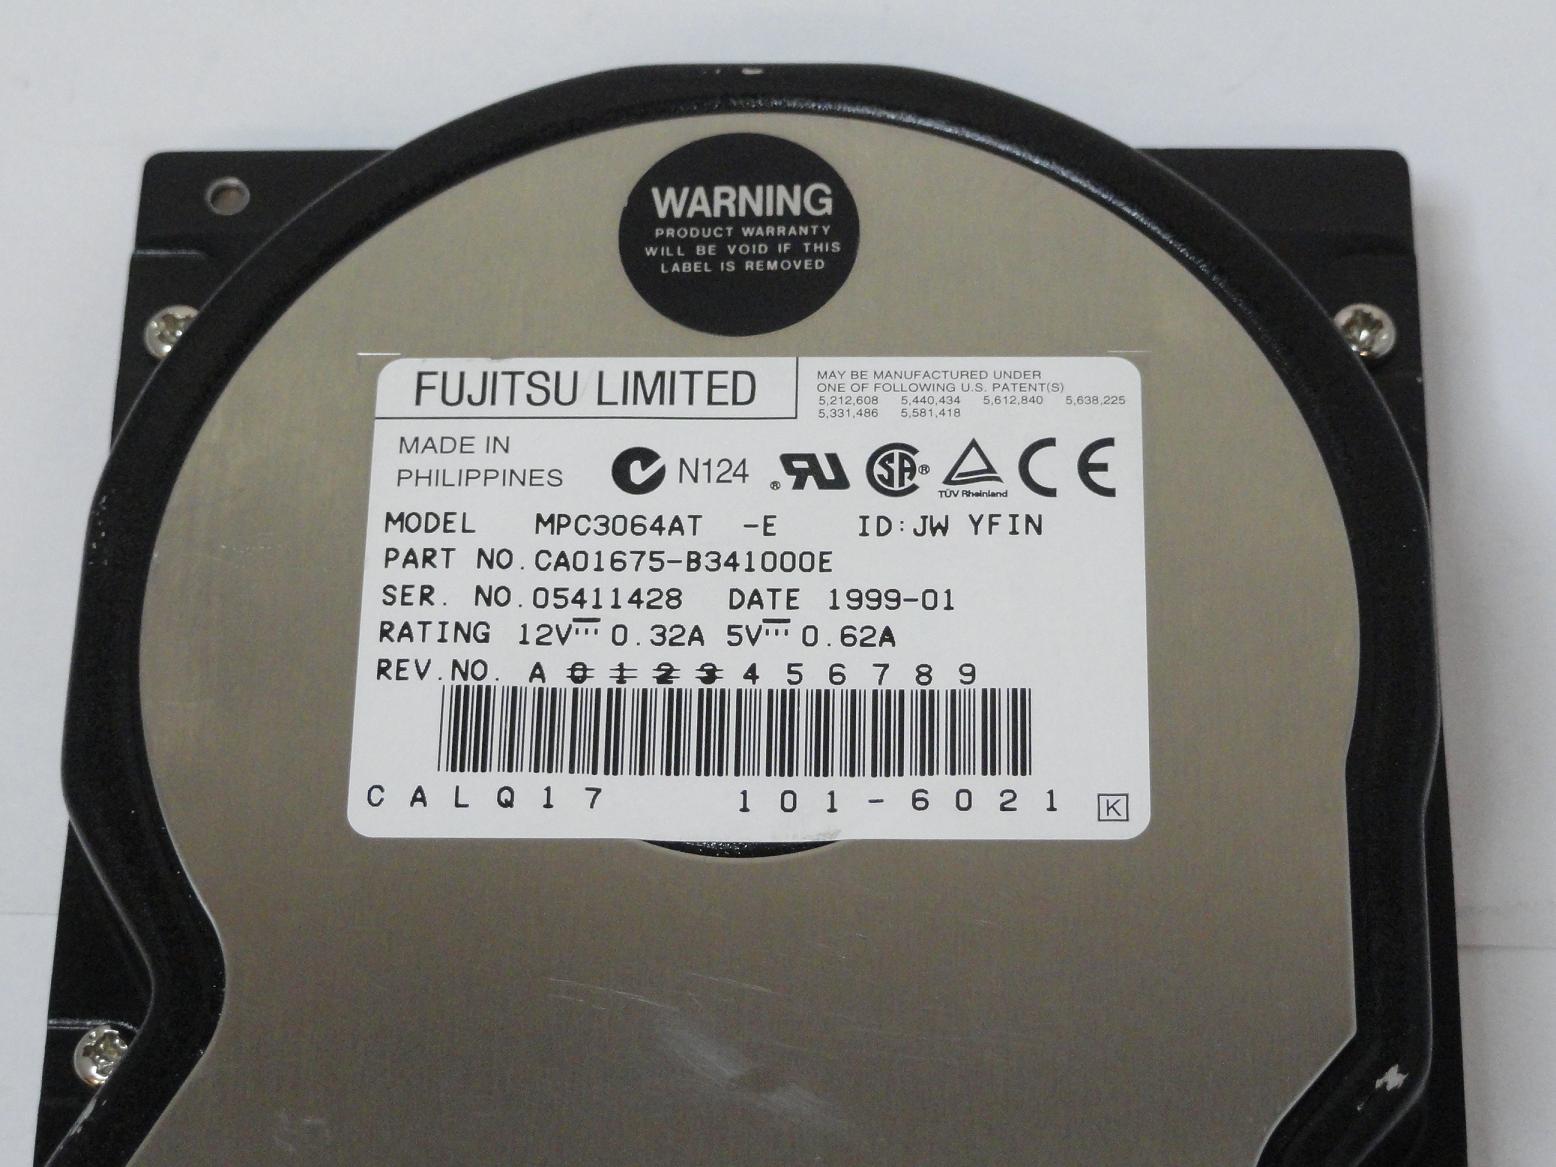 MC4352_CA01675-B341000E_Fujitsu 6.4GB IDE 5400rpm 3.5in HDD - Image3